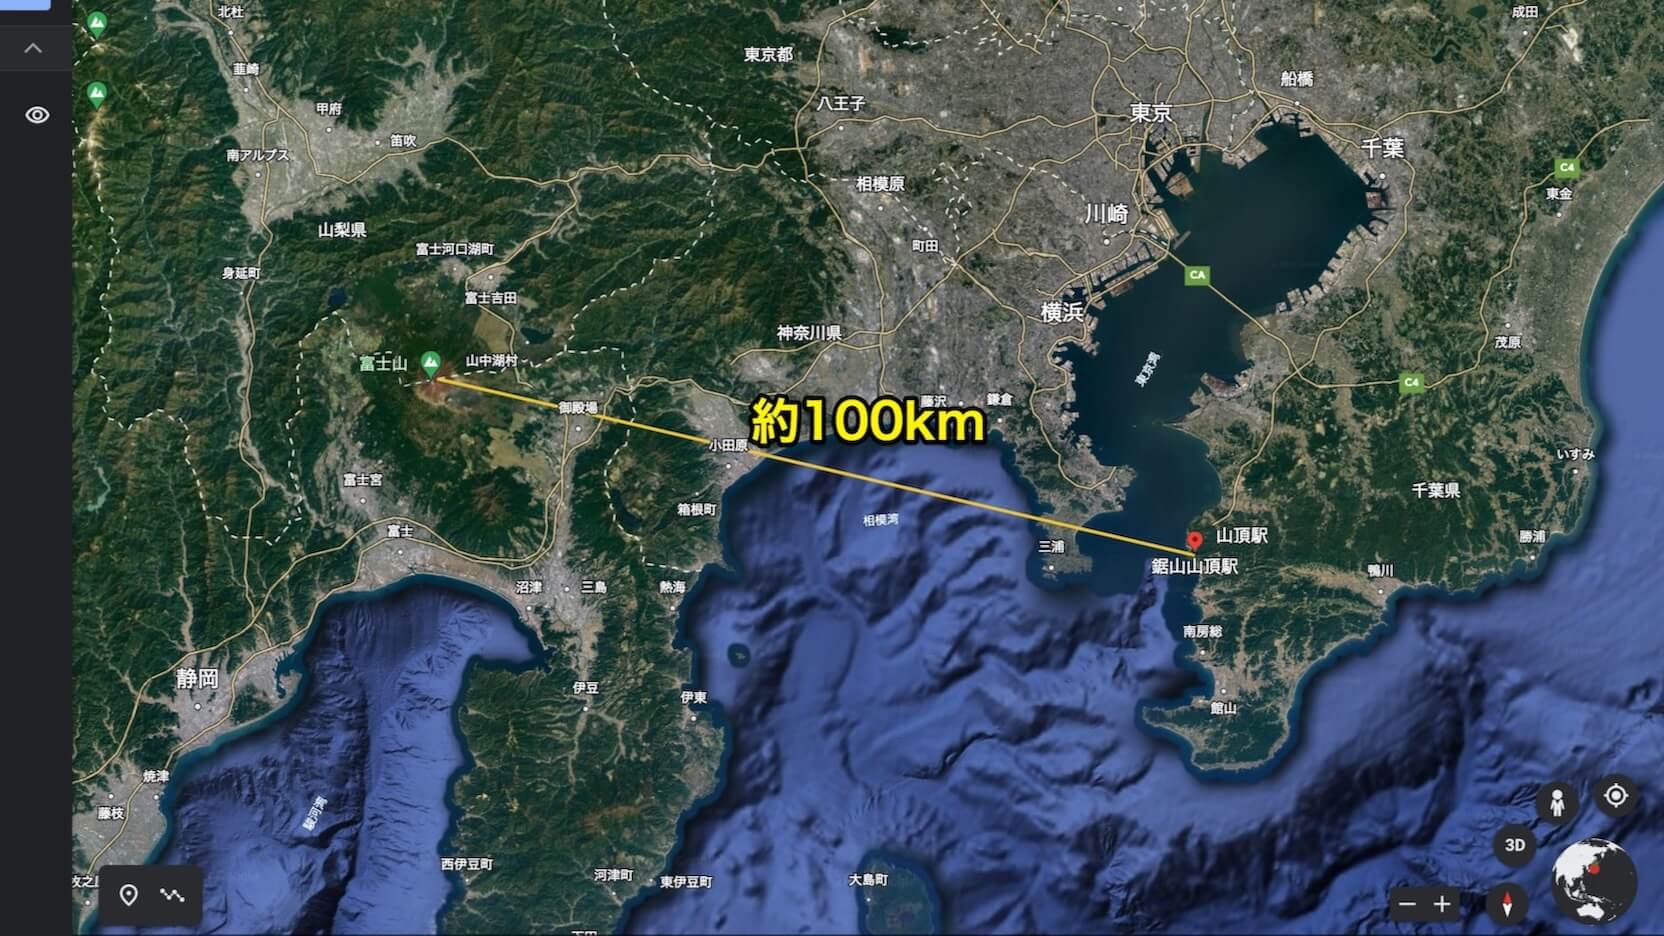 富士山ー鋸山間の位置関係と距離の地図